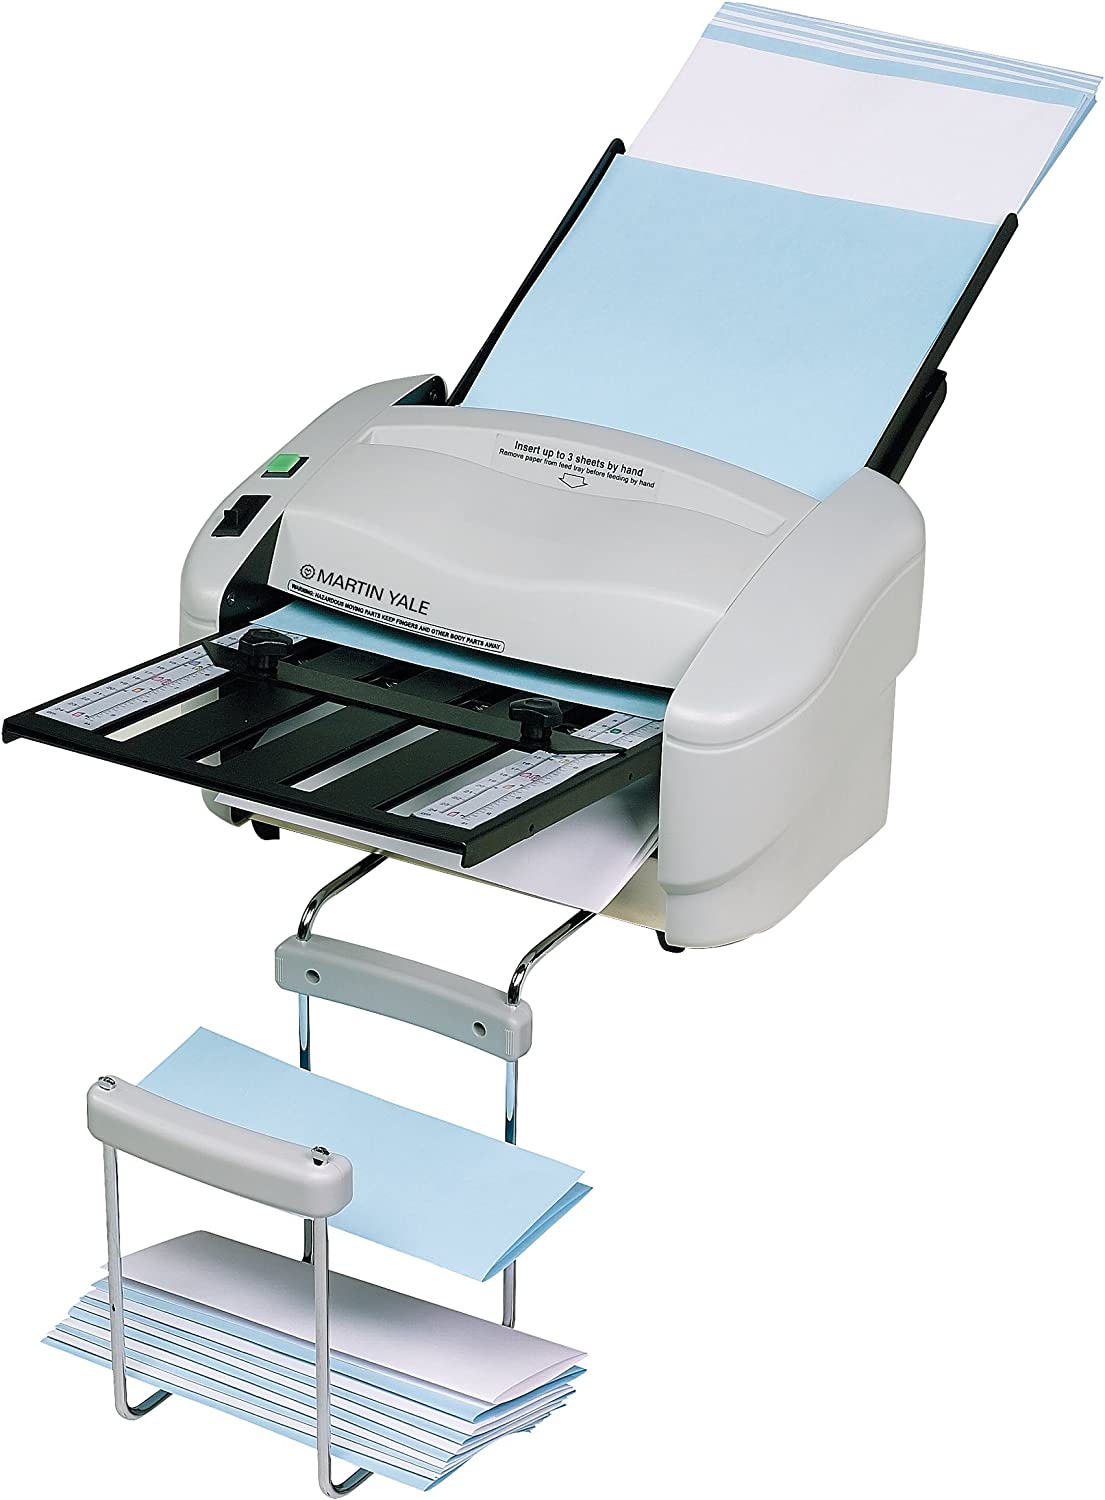 Martin Yale P7400 RapidFold Automatic Paper Folding Machine